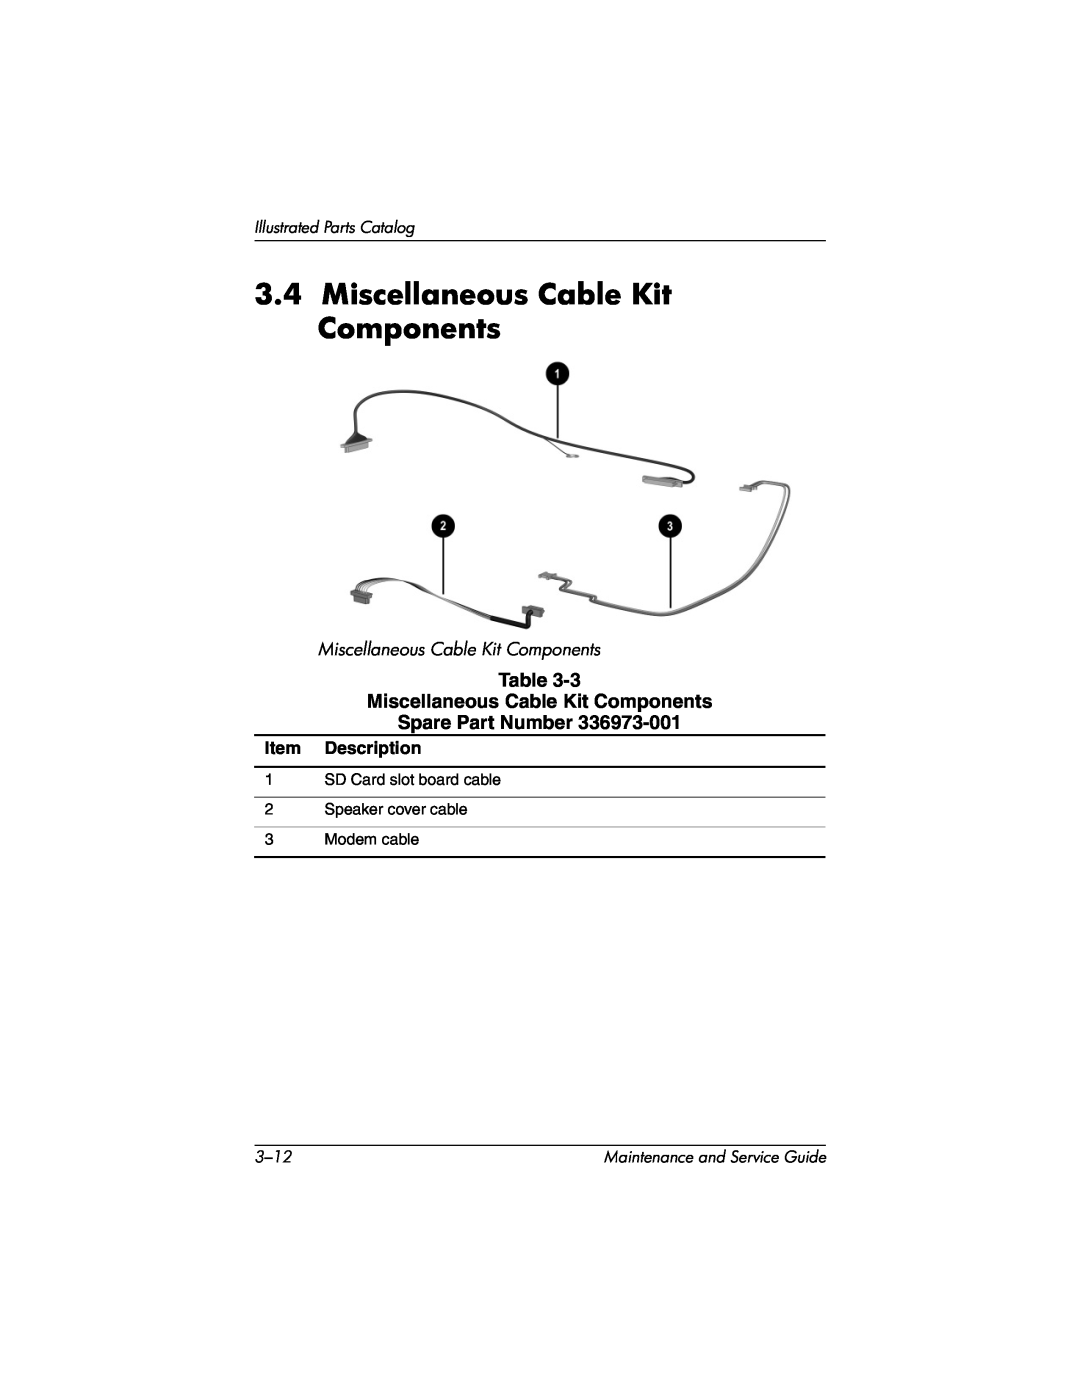 HP X1096AP, X1027AP, X1026AP, X1023AP Miscellaneous Cable Kit Components, Item Description, Illustrated Parts Catalog, 3-12 